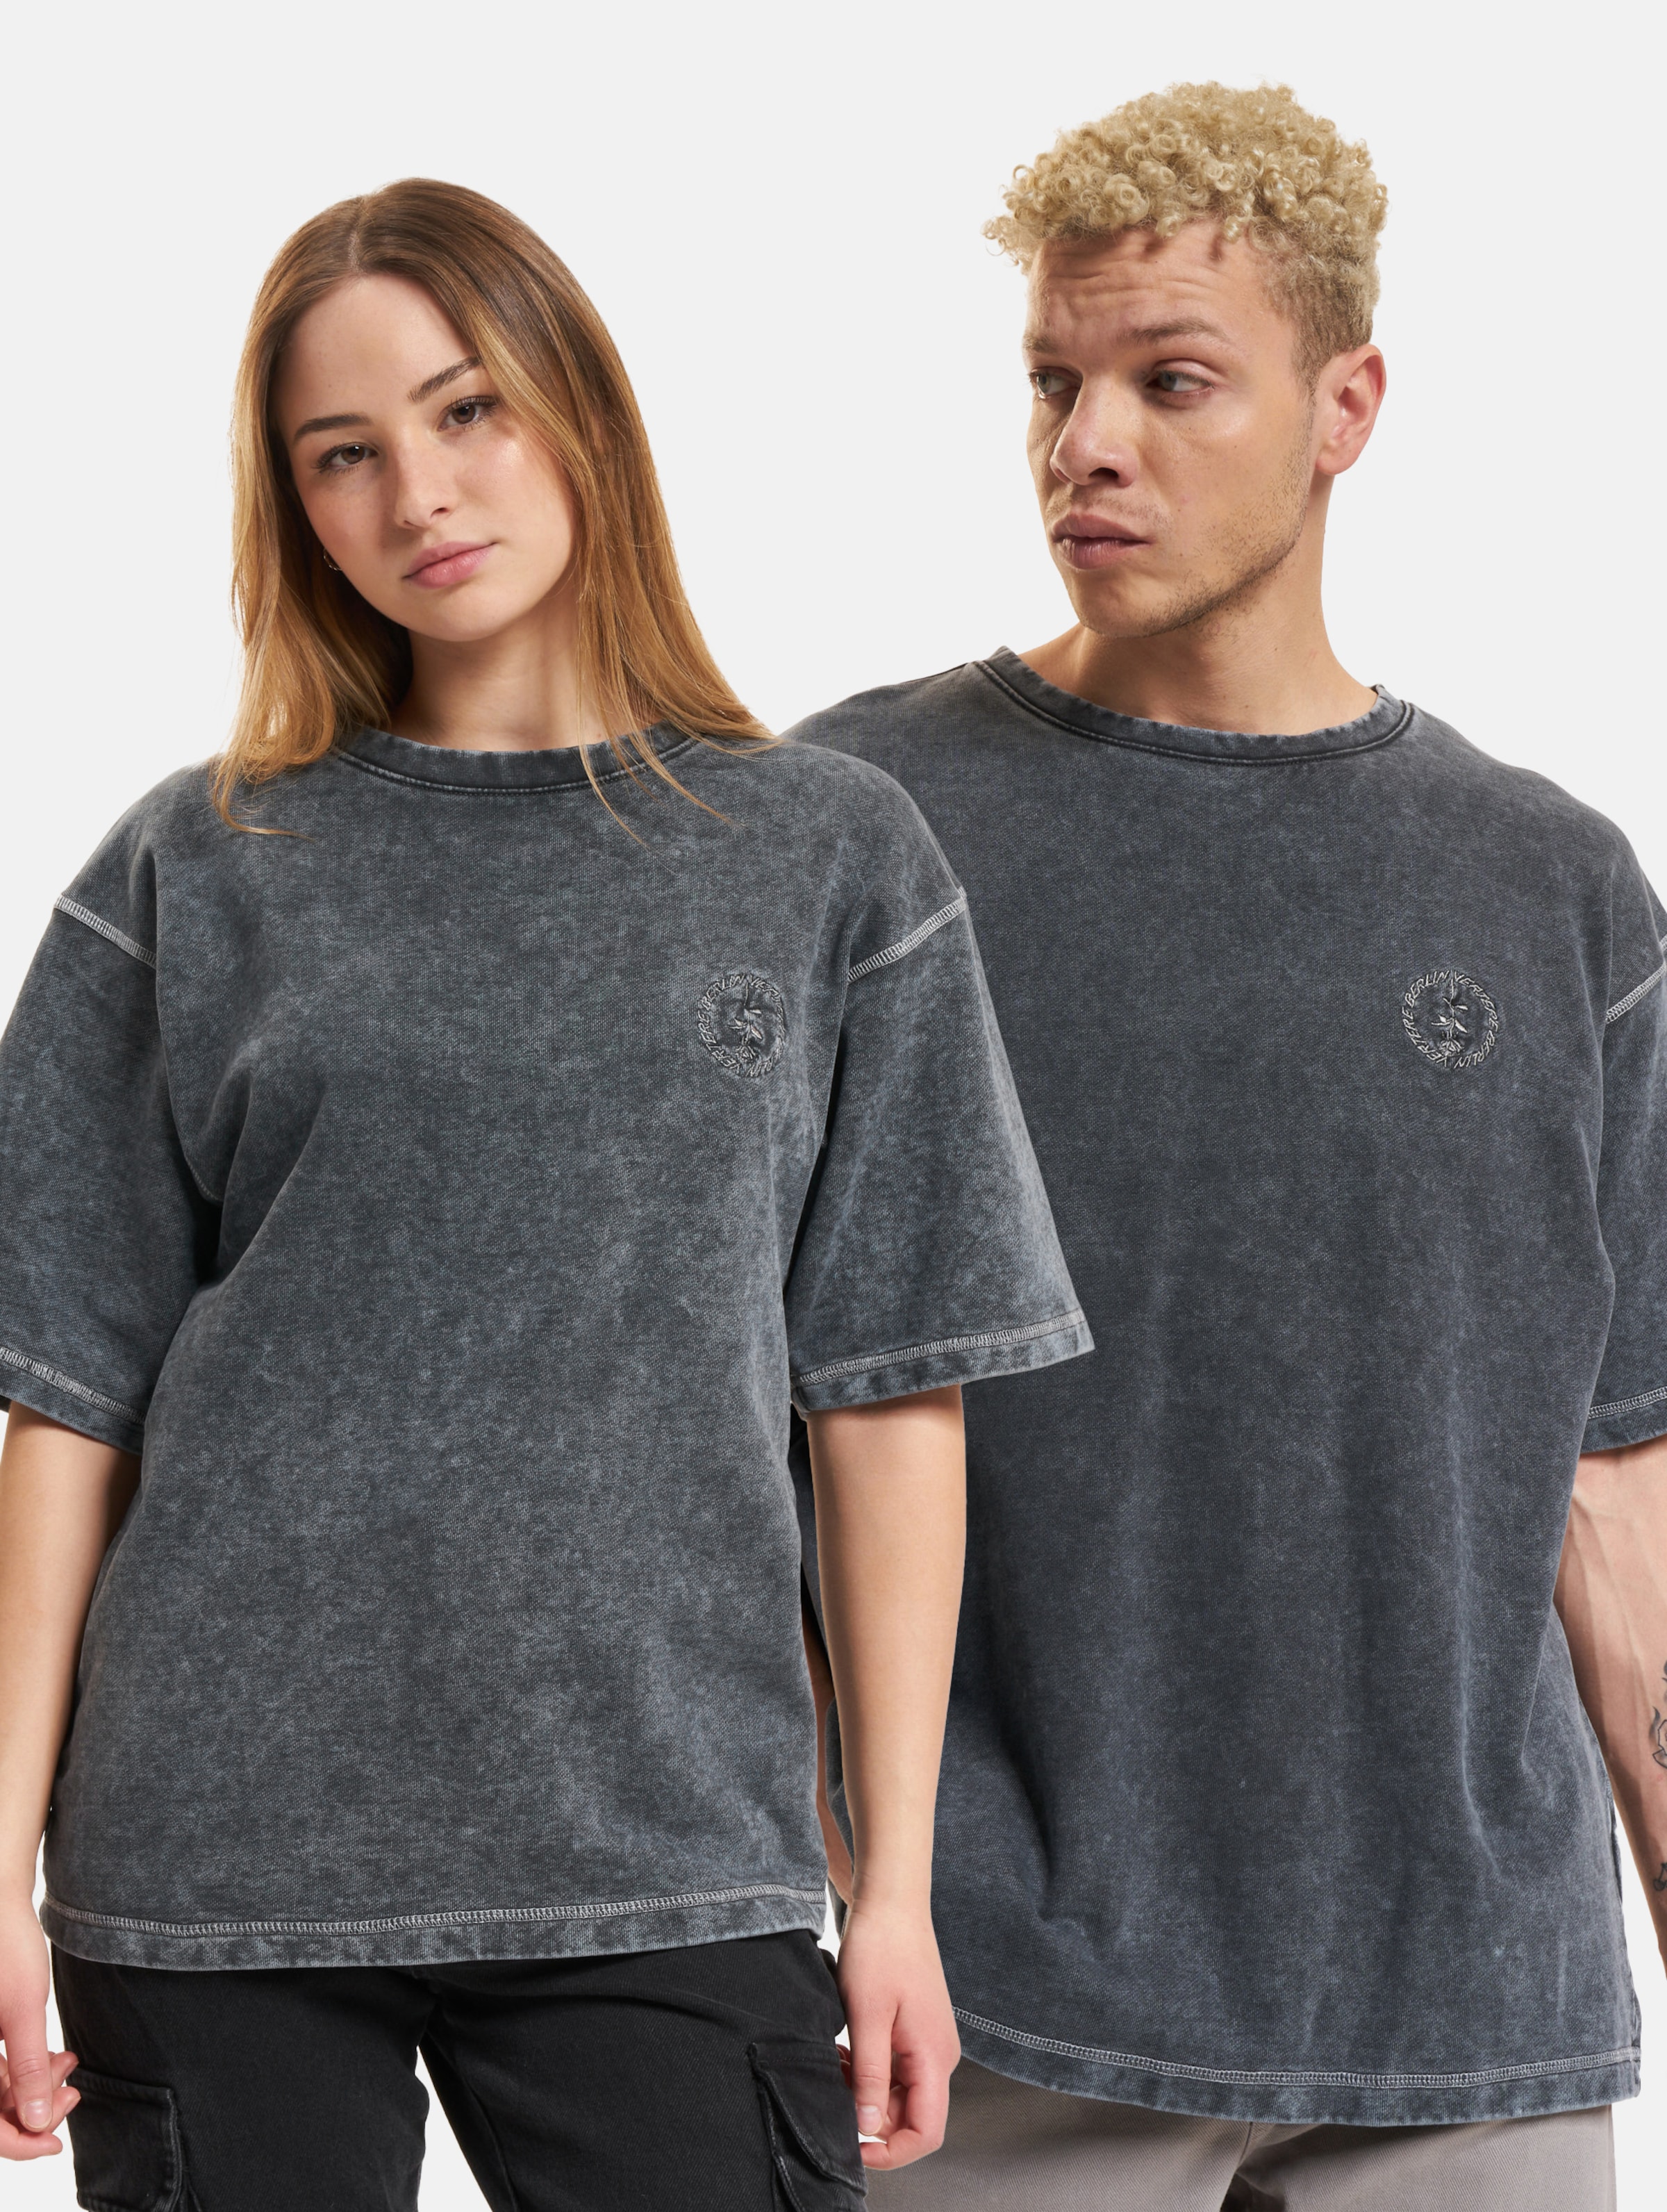 Vertere Berlin Heavyweight T-Shirt Frauen,Männer,Unisex op kleur zwart, Maat XL